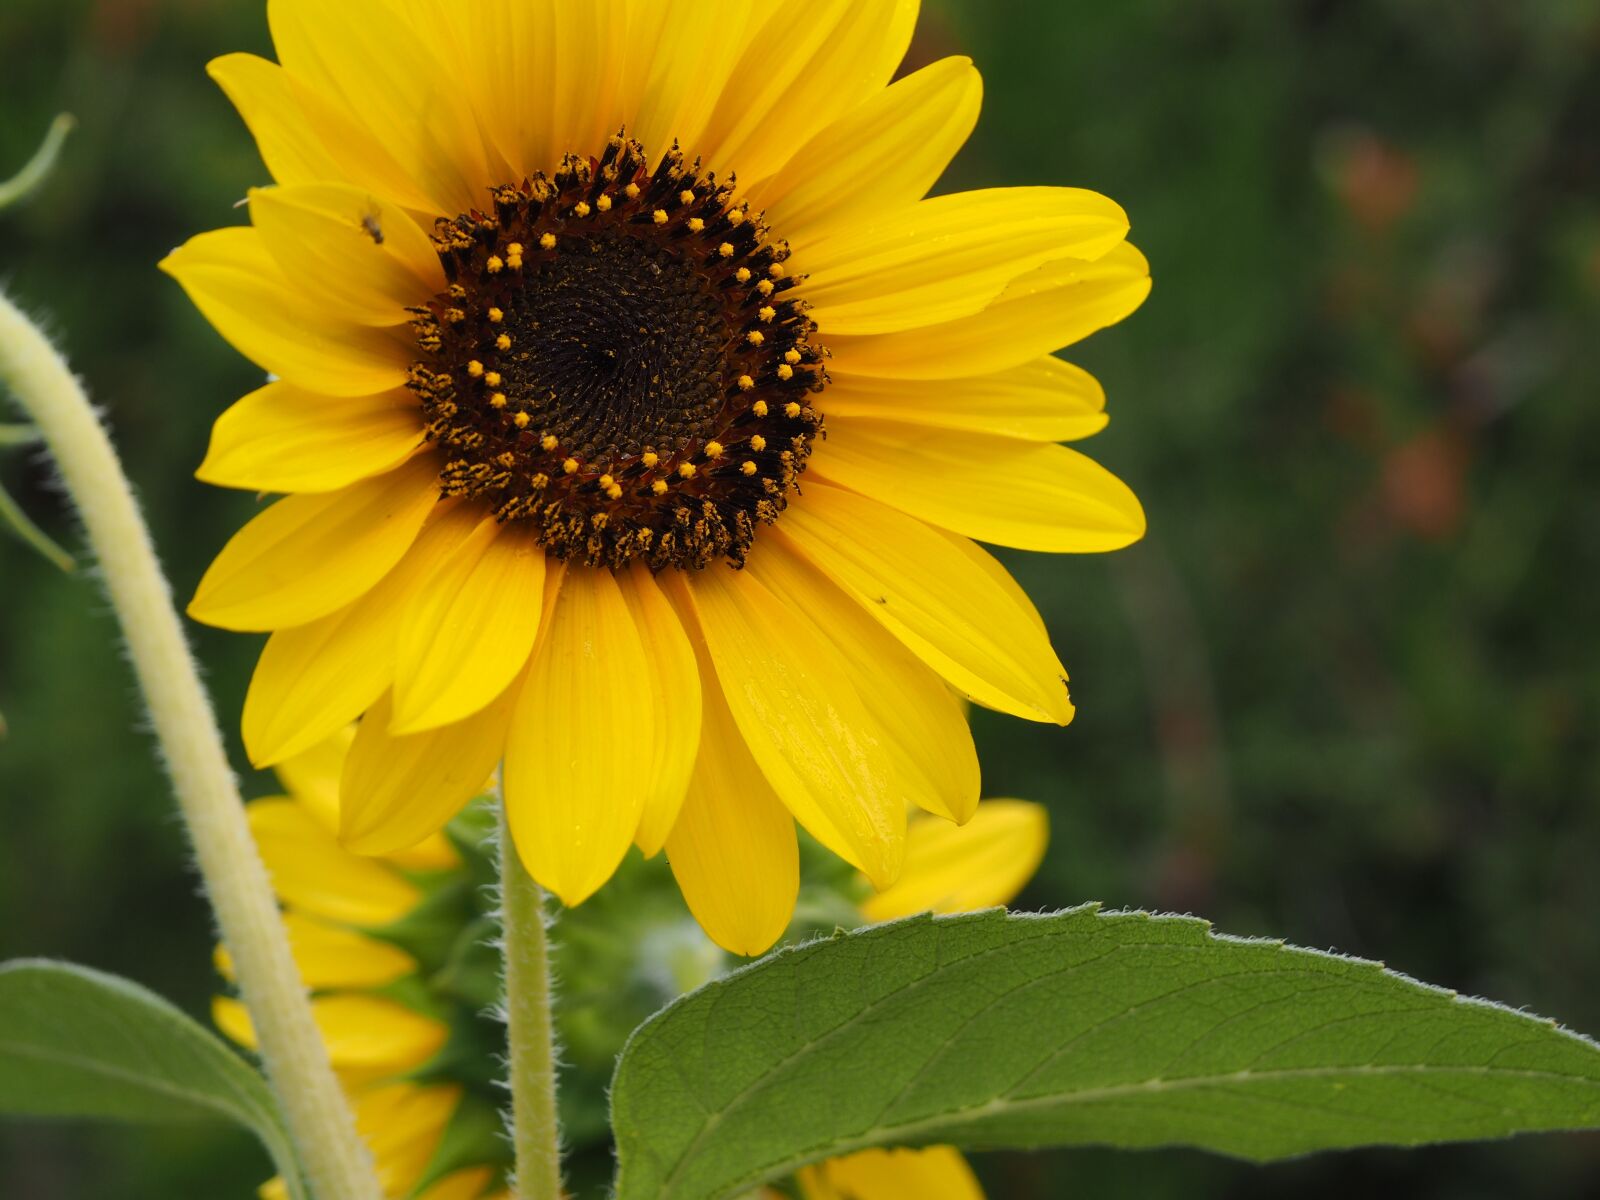 Olympus M.Zuiko Digital ED 14-150mm F4-5.6 II sample photo. Sunflower, yellow, flower photography